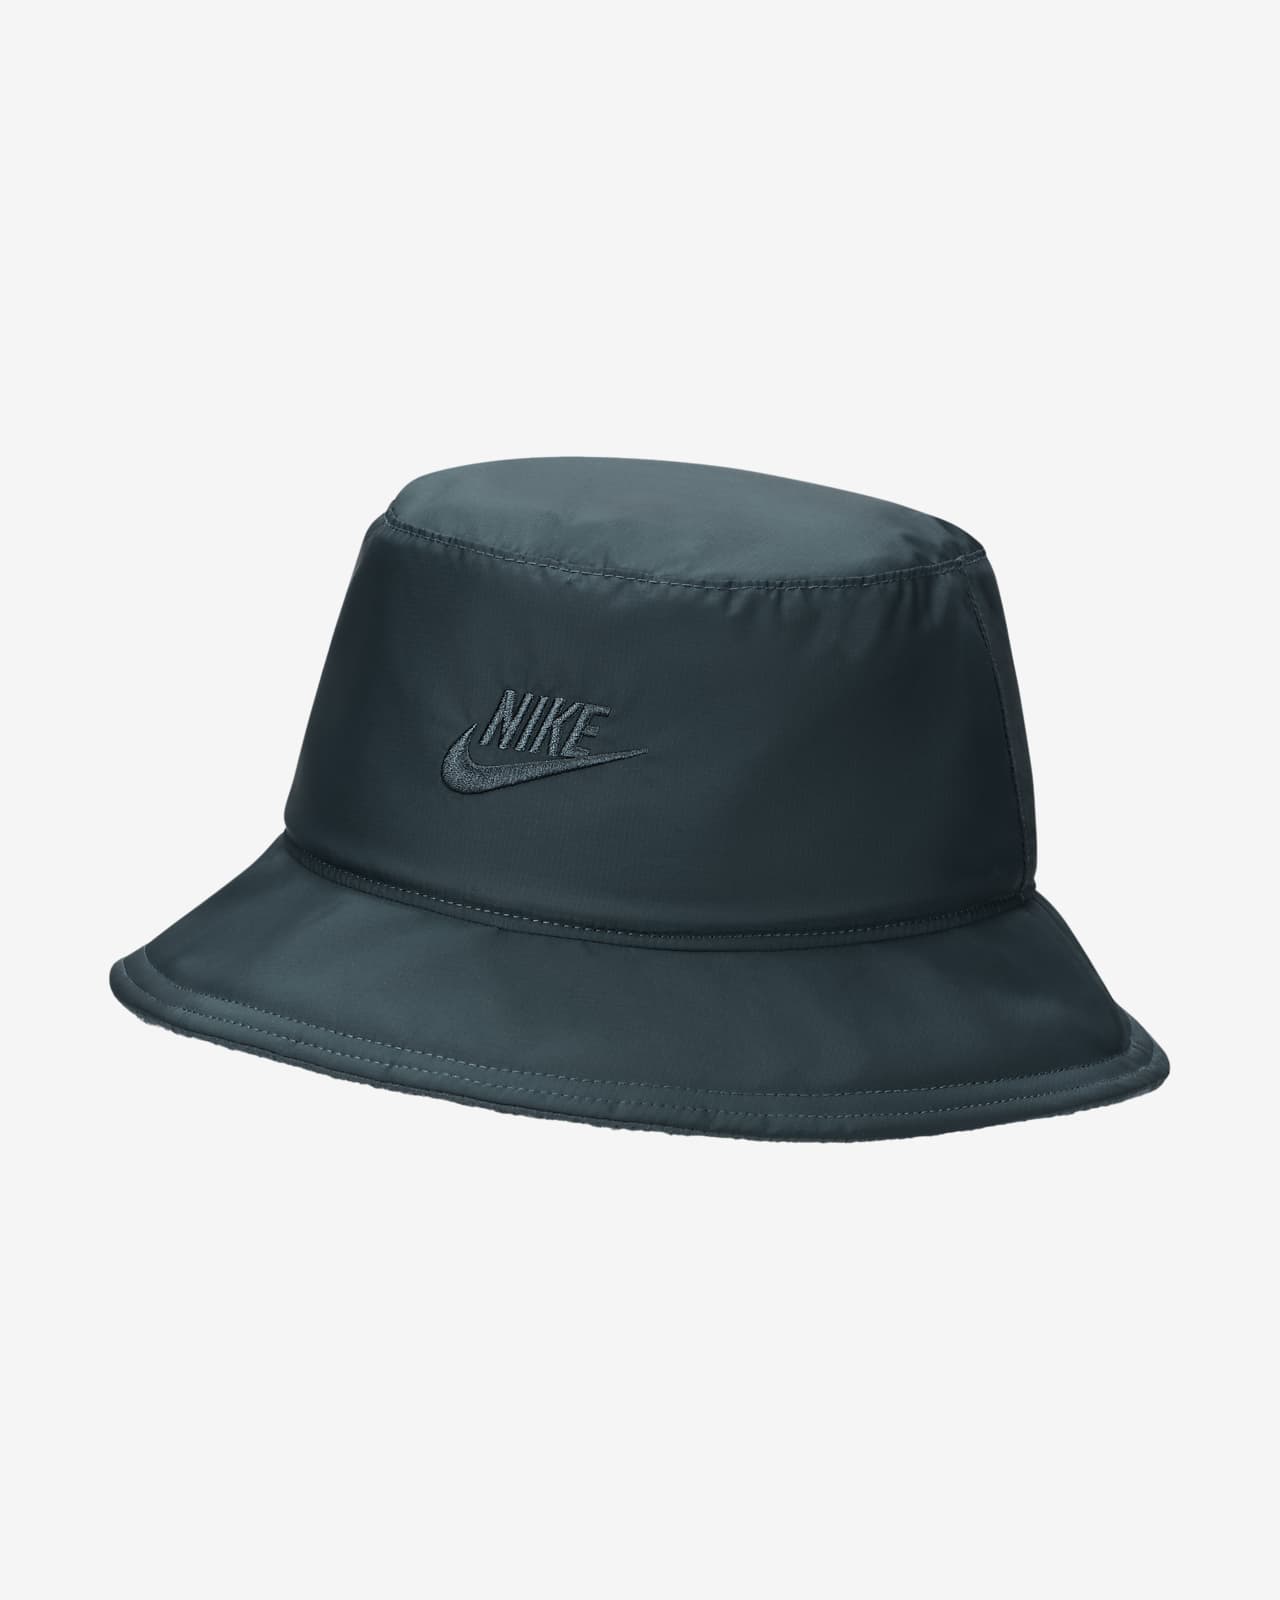 Nike Apex Reversible Bucket Hat.